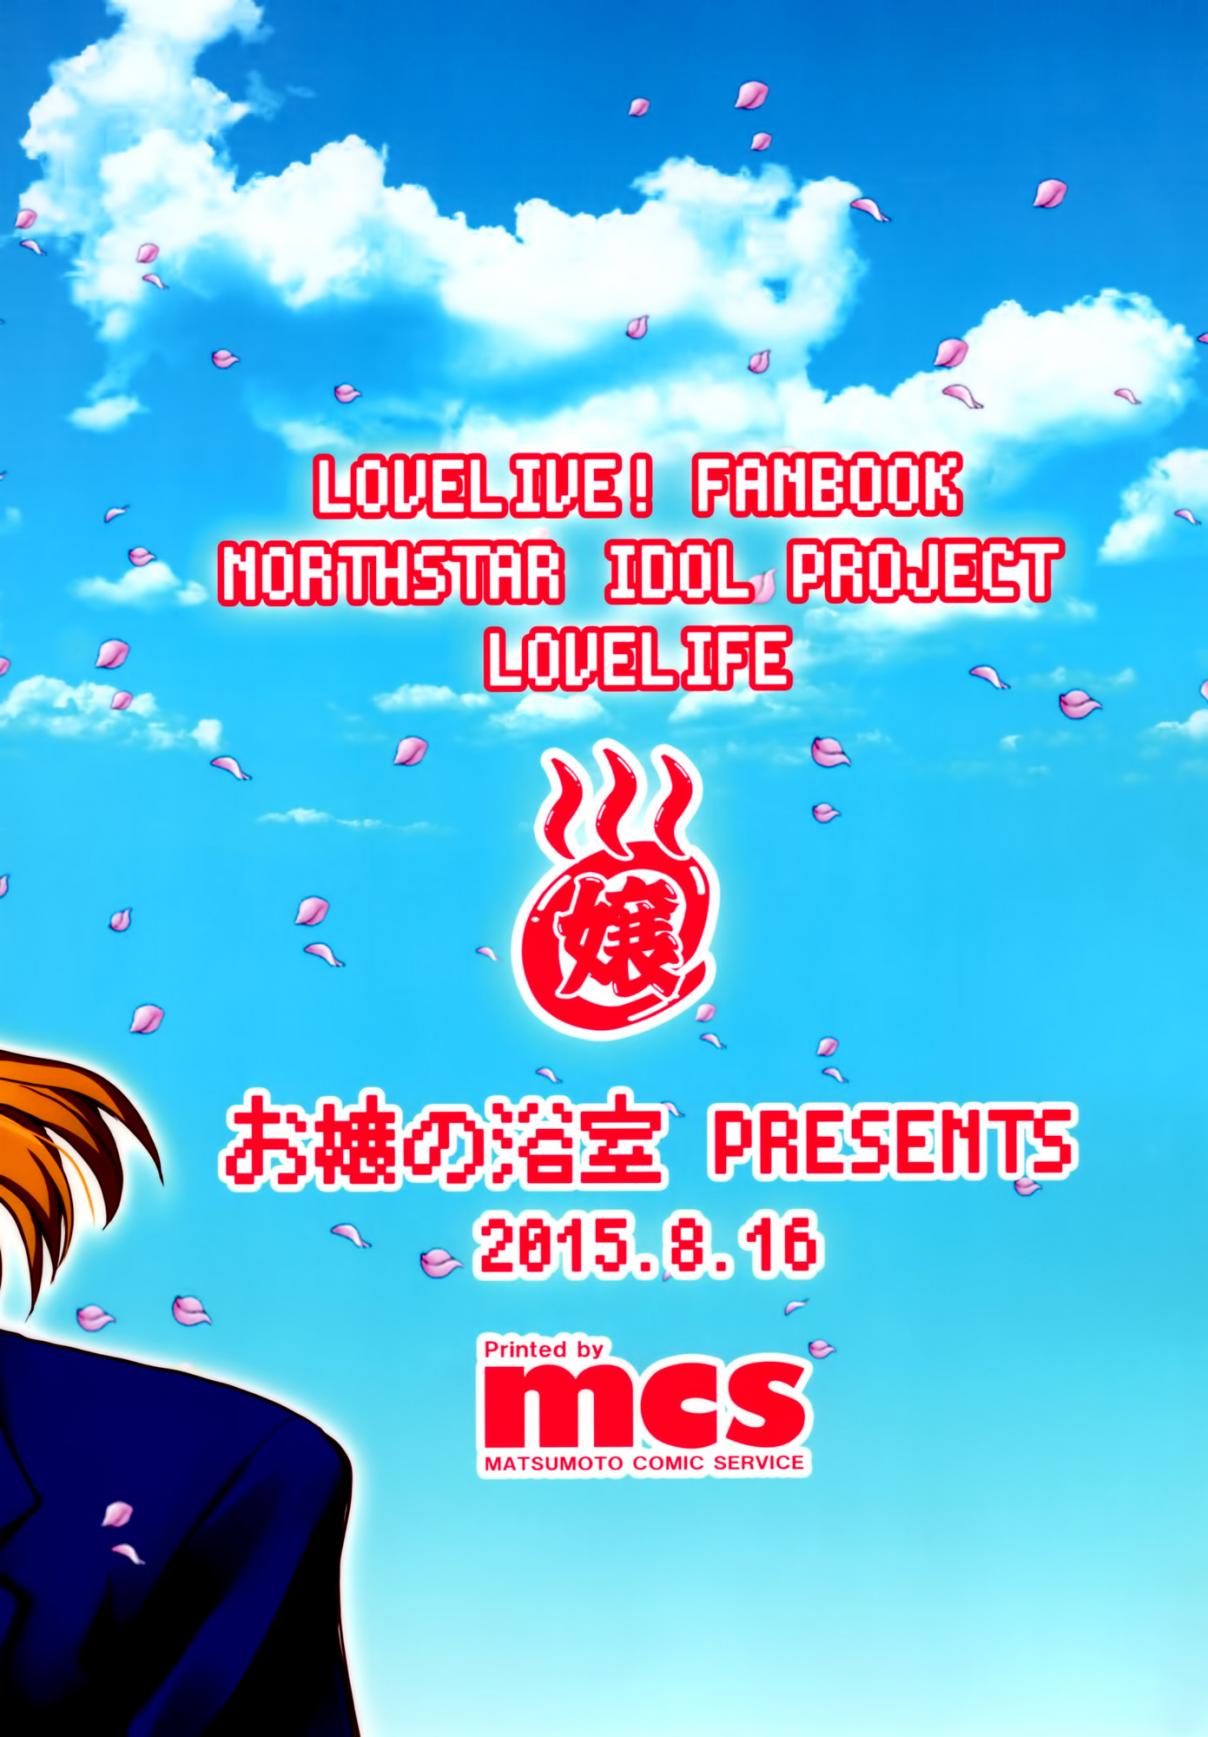 Hokuto no Ken & Love Live! Love Life! (Doujinshi) Oneshot